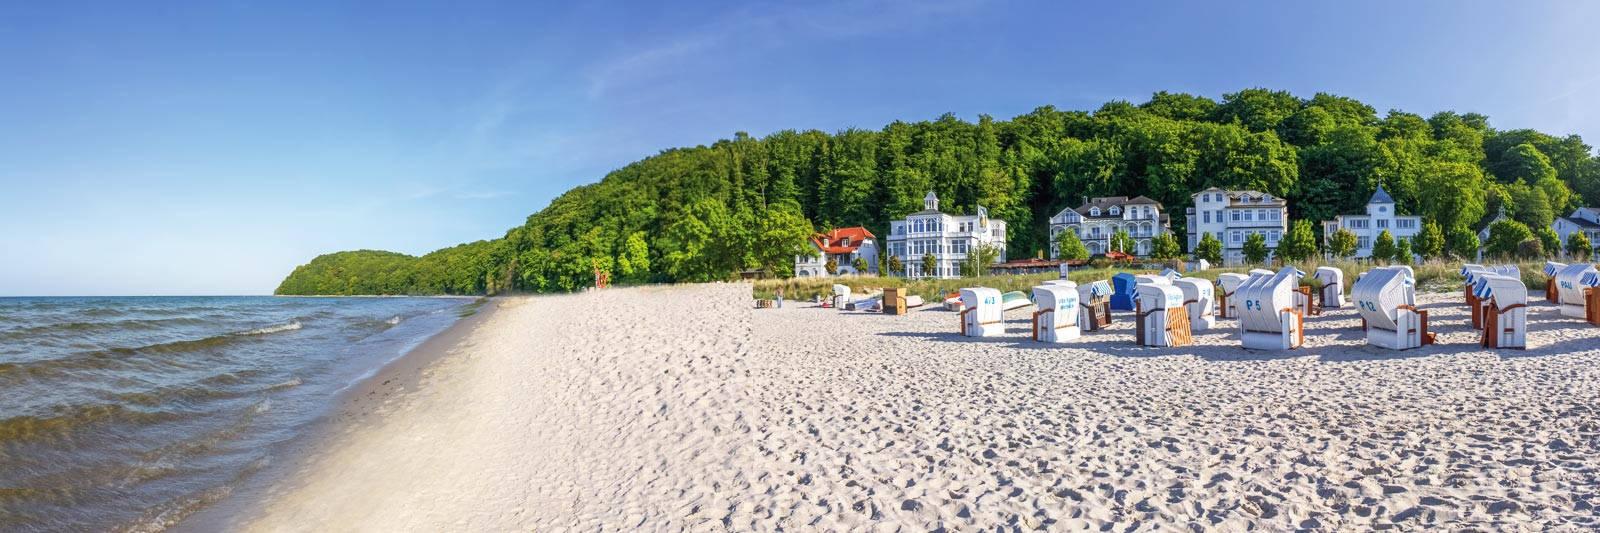 26 Ferienwohnungen und Ferienhäuser in Blankensee - tourist-online.de